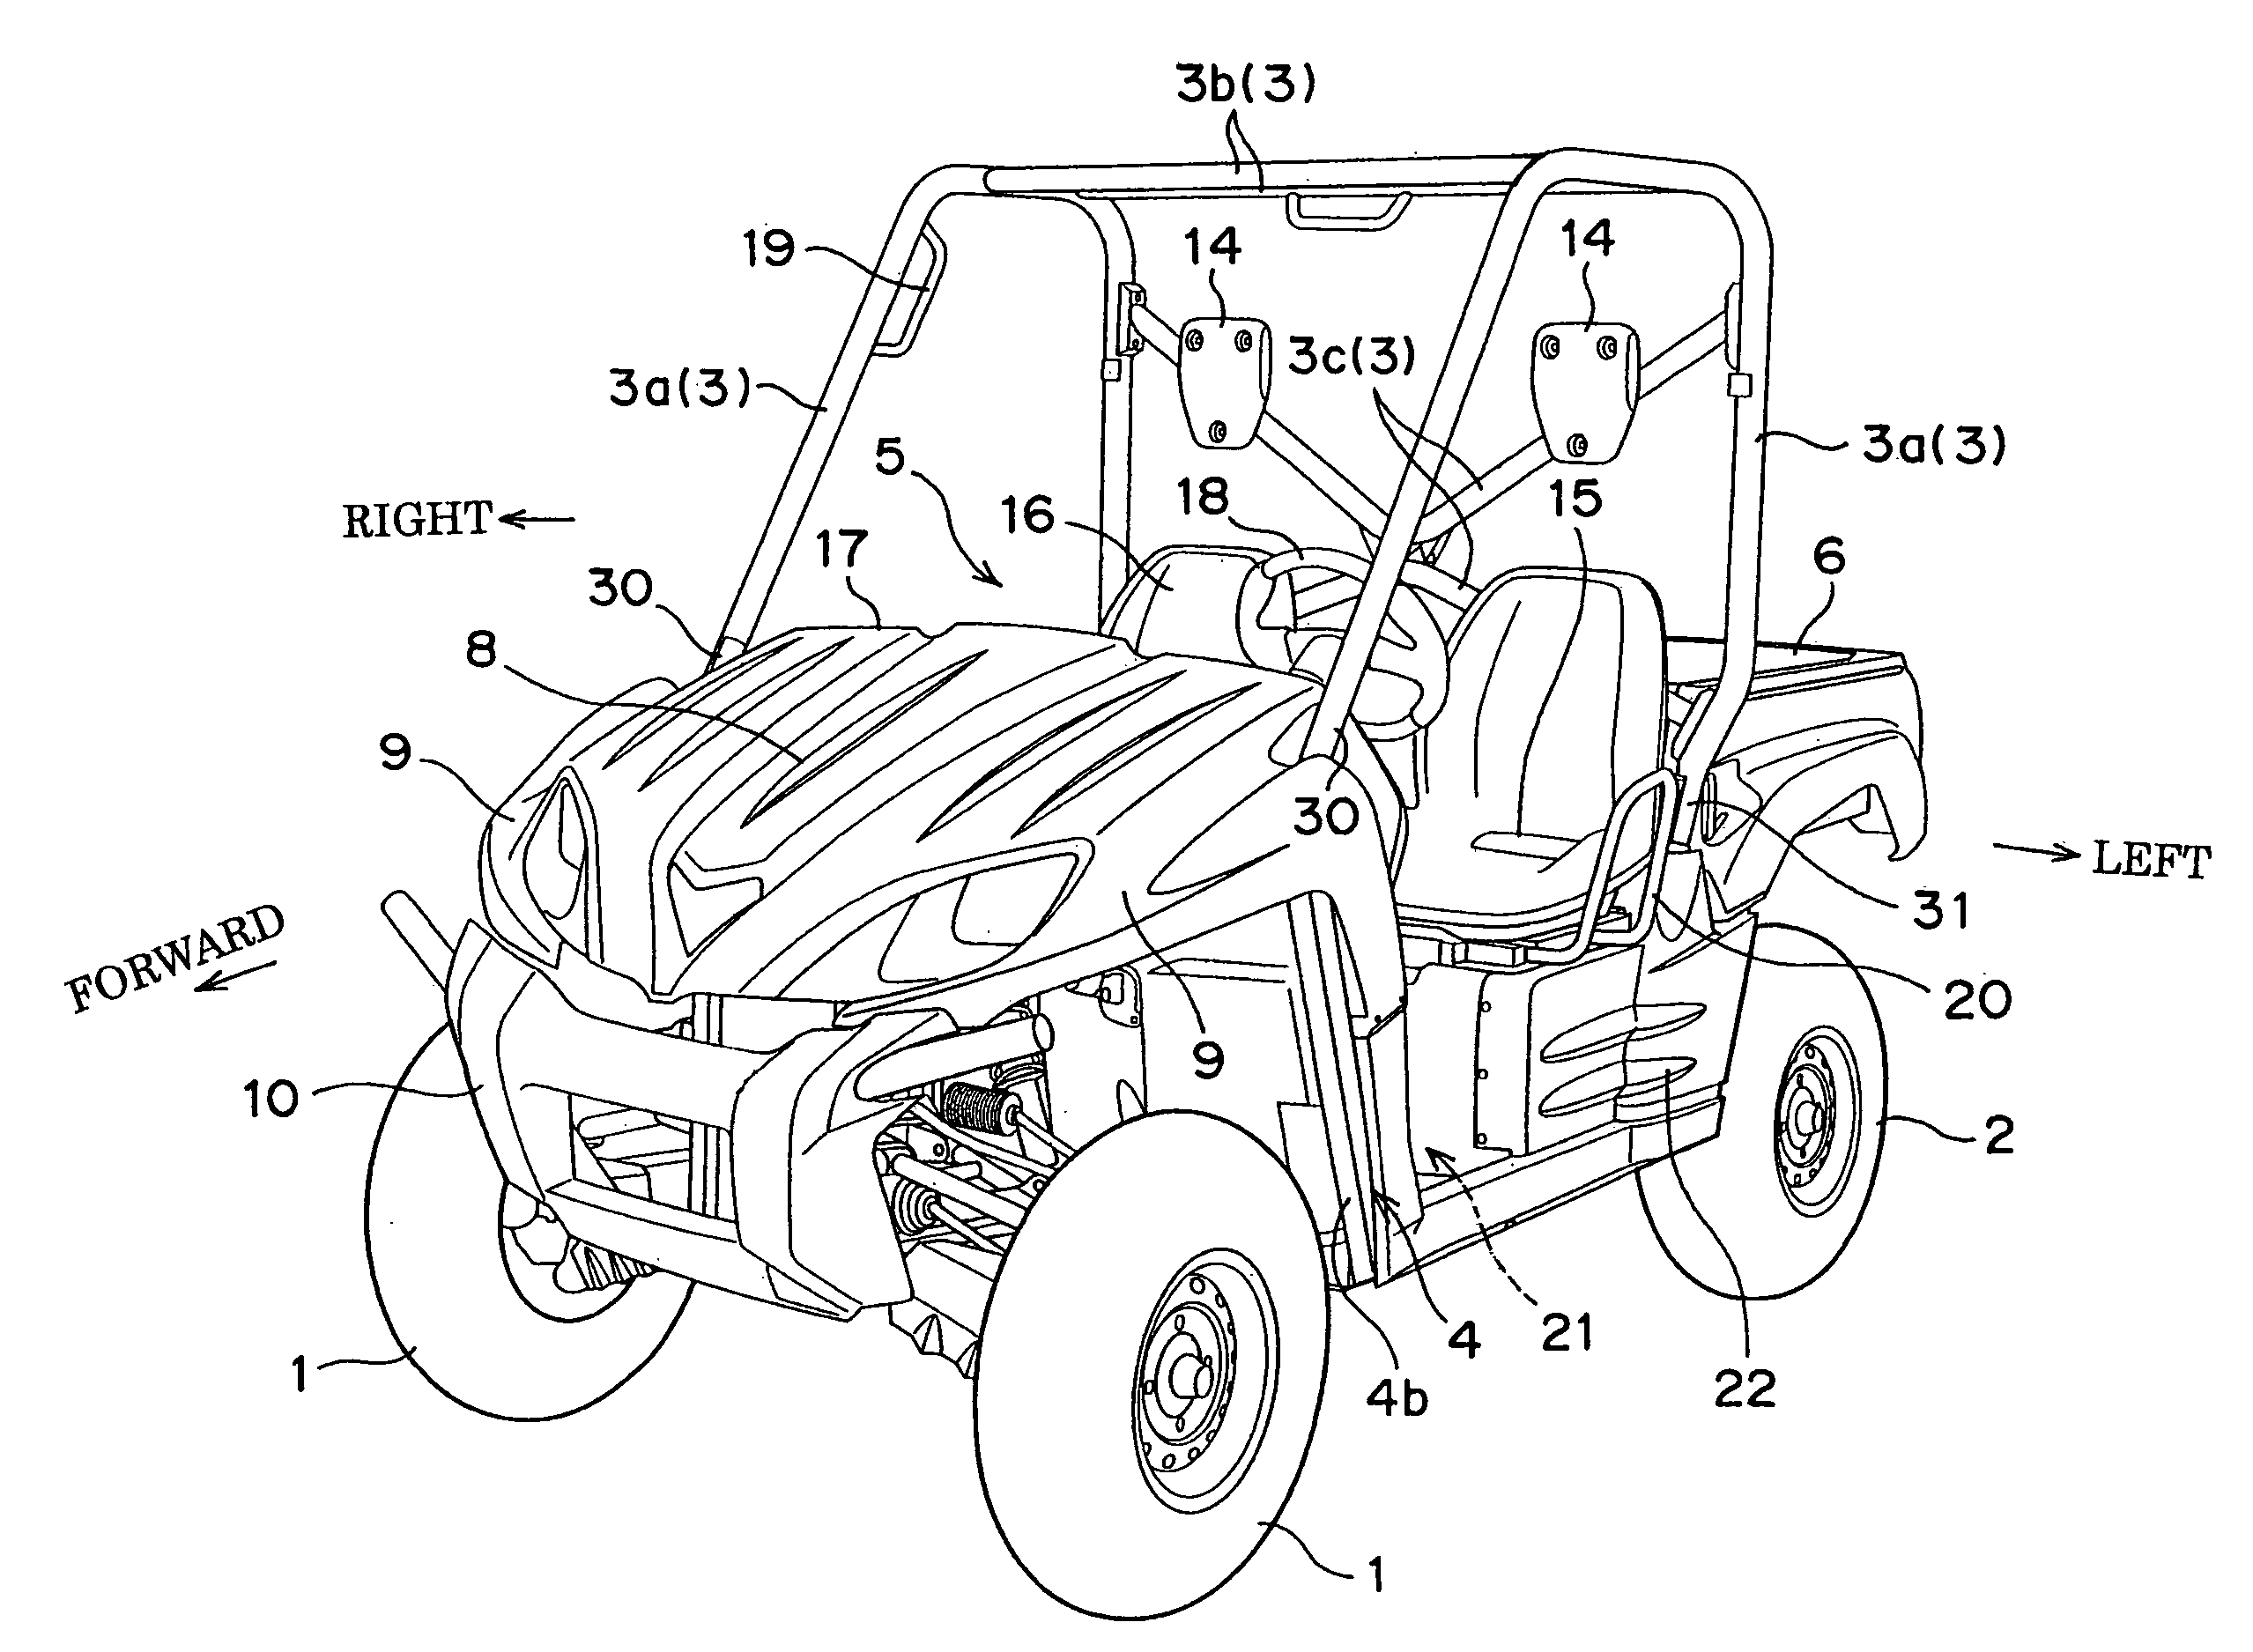 Four wheeled utility vehicle